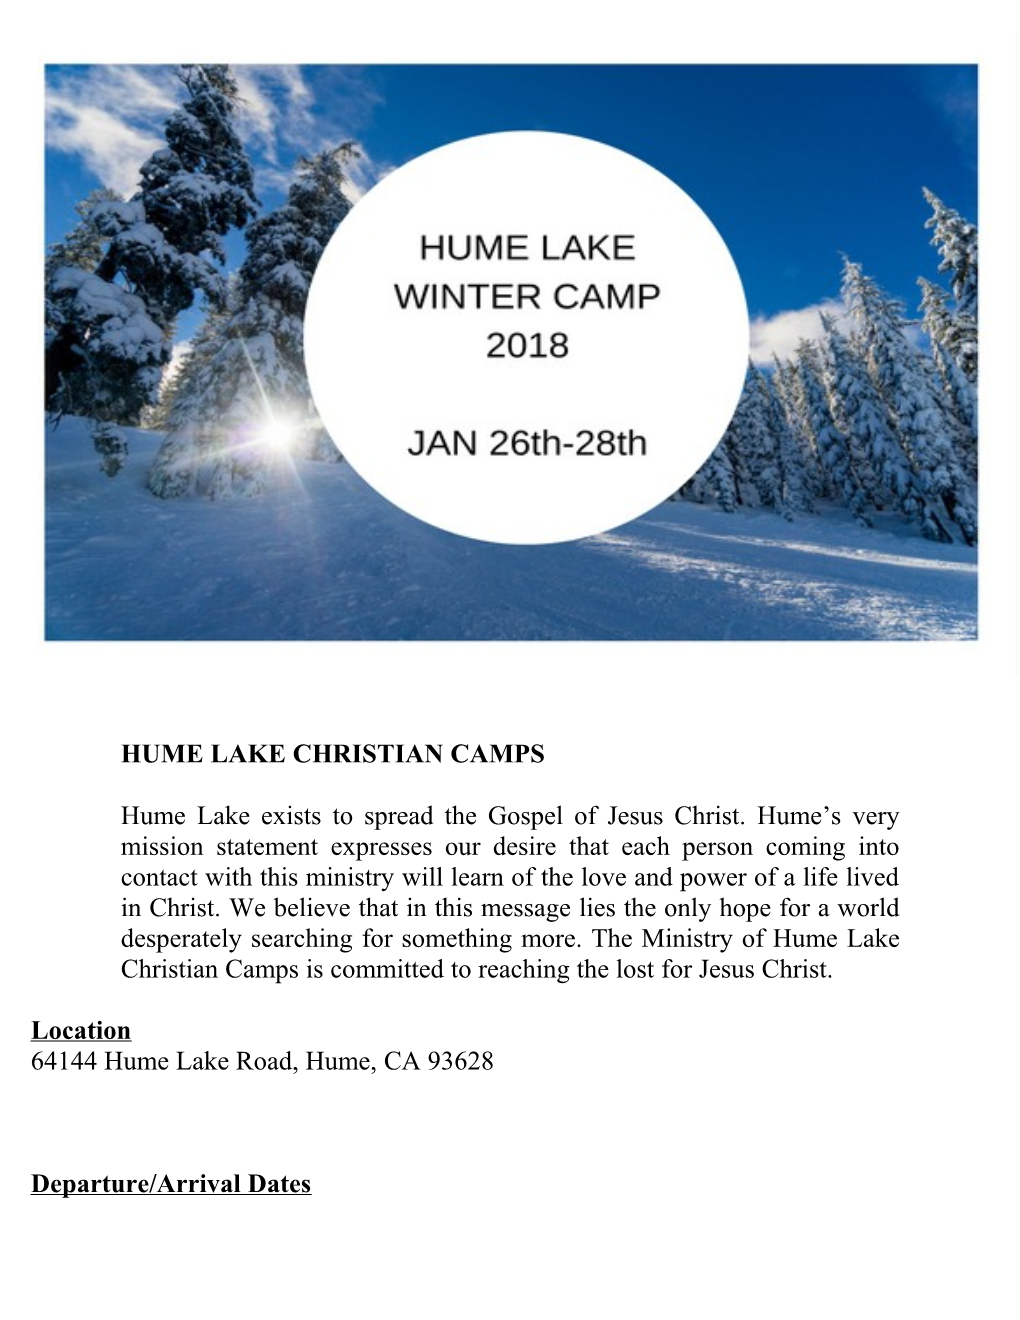 Hume Lake Christian Camps